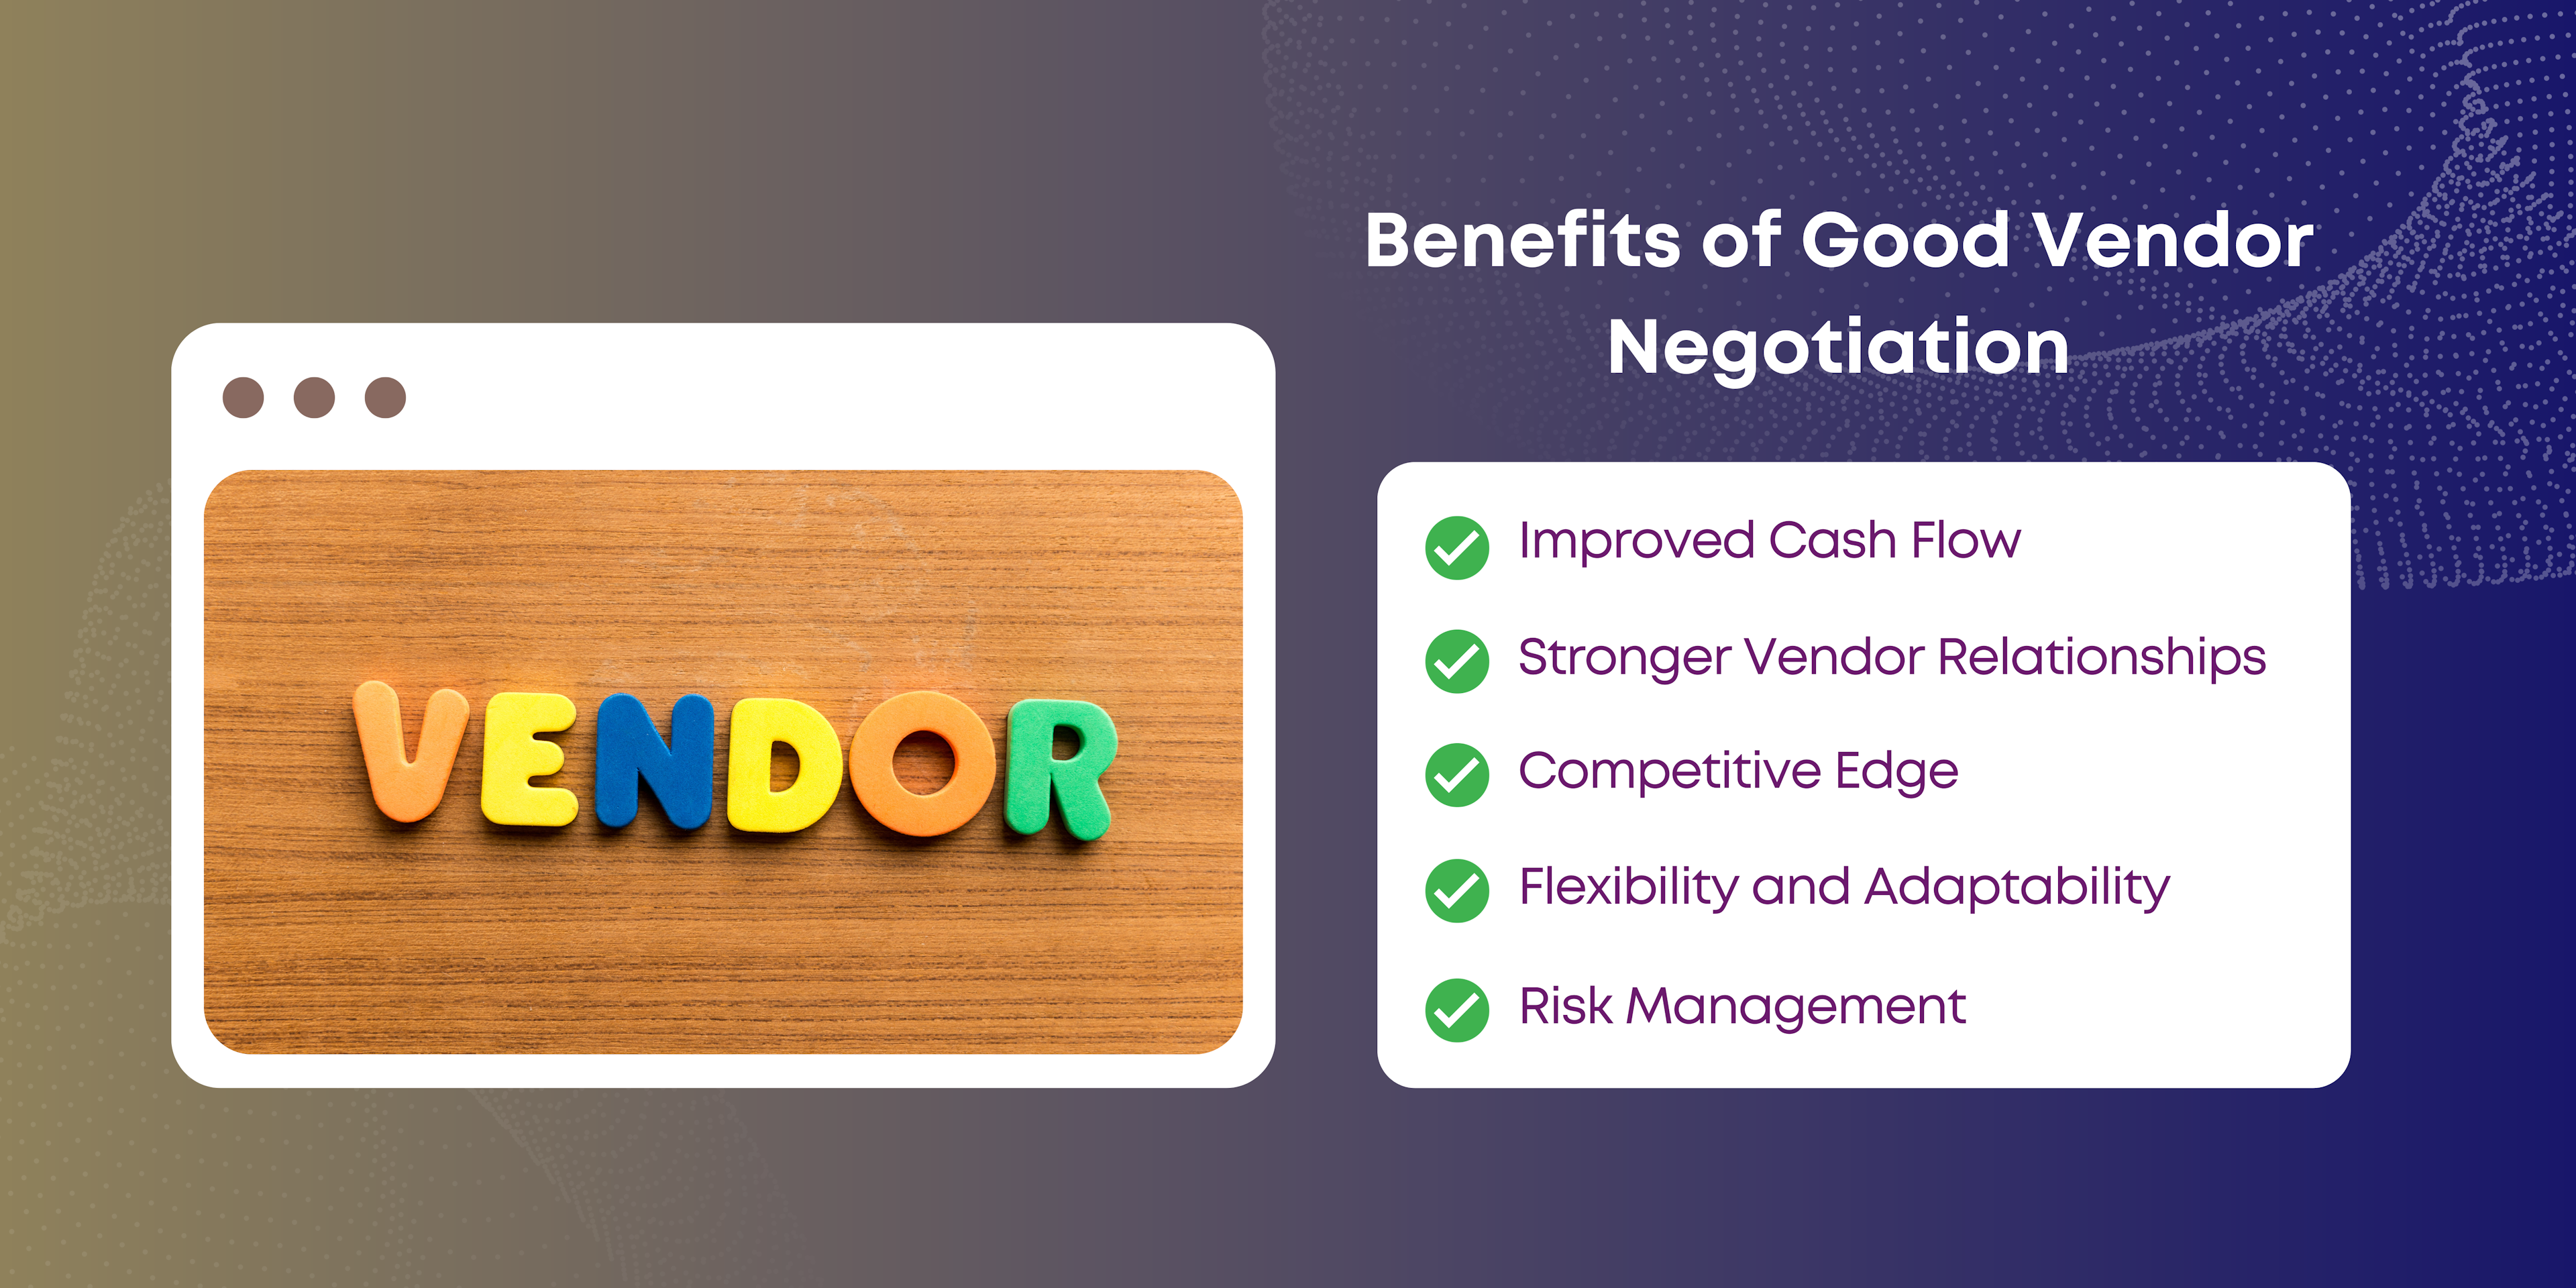 Benefits of Good Vendor Negotiation